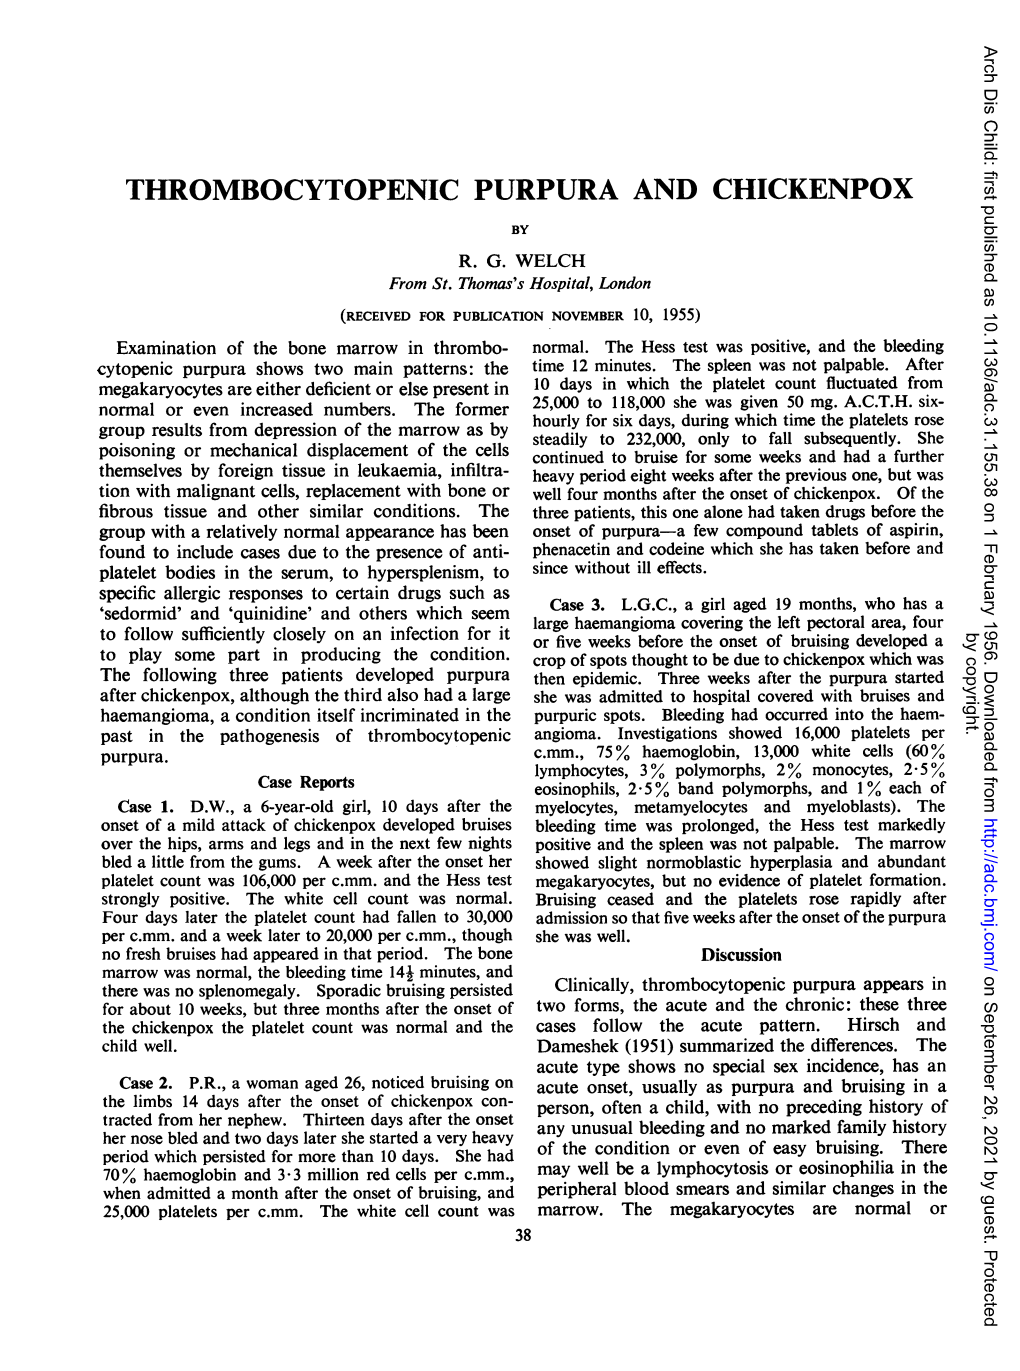 Thrombocytopenic Purpura and Chickenpox